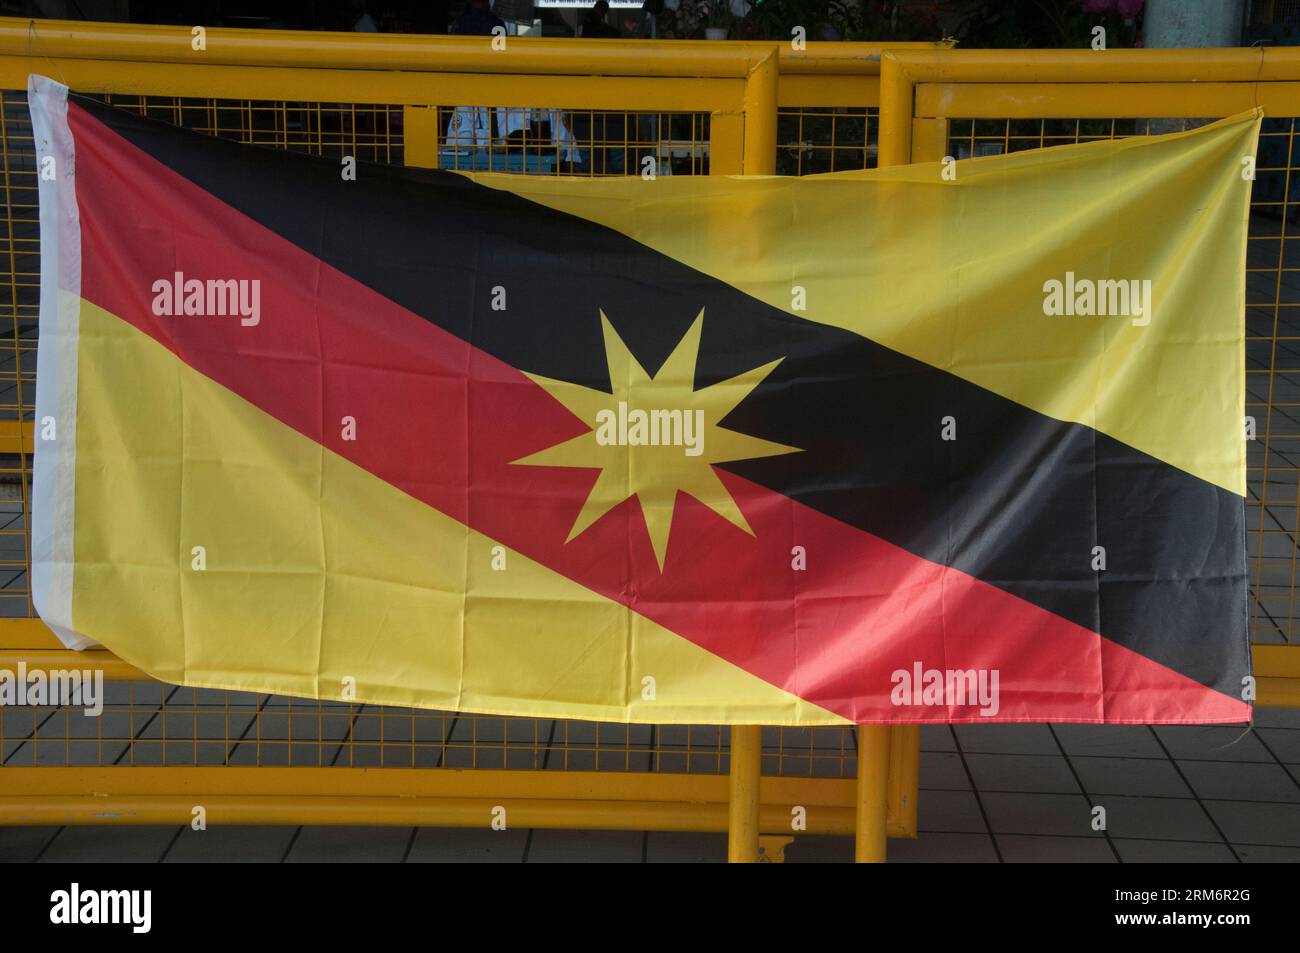 Sarawak state flag displayed at the central market at Sibu, Sarawak, Malaysia Stock Photo